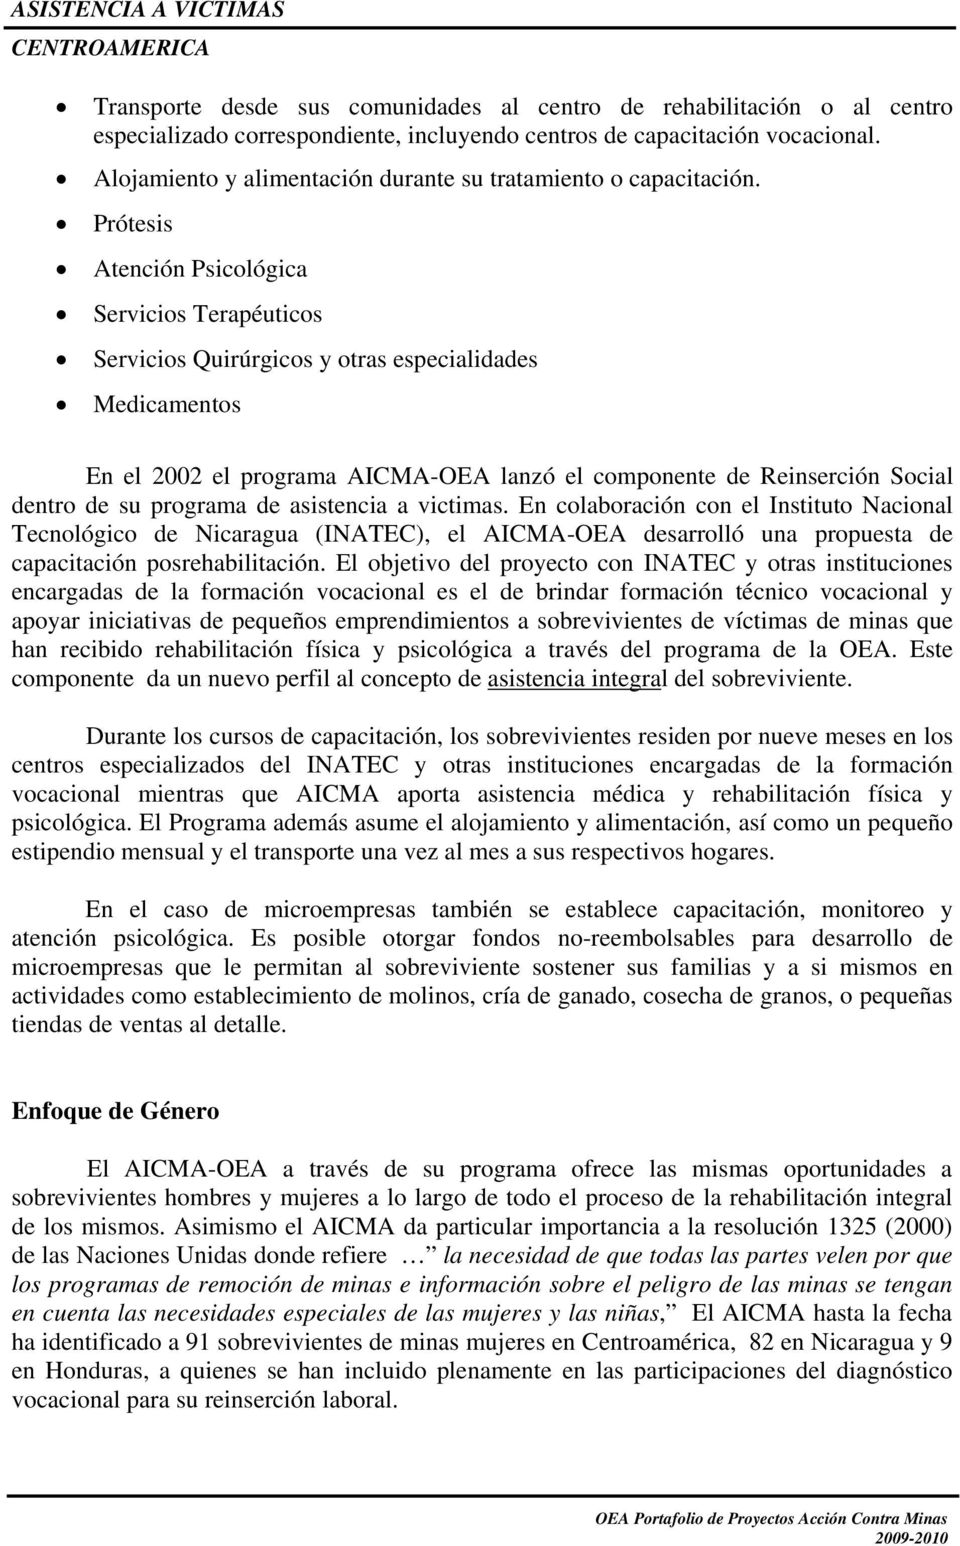 Prótesis Atención Psicológica Servicios Terapéuticos Servicios Quirúrgicos y otras especialidades Medicamentos En el 2002 el programa AICMA-OEA lanzó el componente de Reinserción Social dentro de su